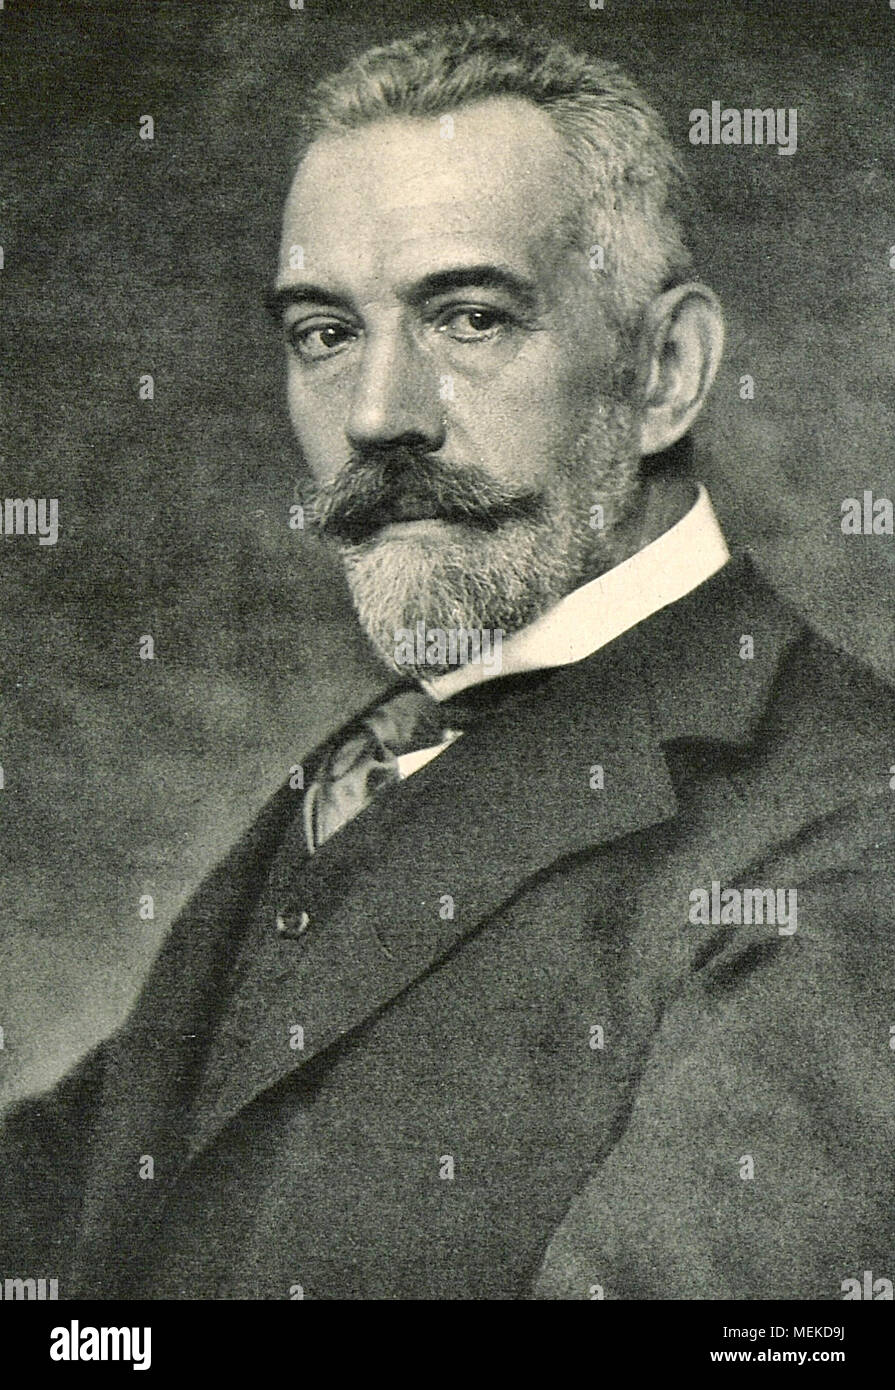 Theobald von Bethmann-Hollweg, Theodor Friedrich Alfred von Bethmann-Hollweg (29. November 1856 - der 1. Januar 1921) war ein deutscher Politiker, war der Kanzler des Deutschen Reiches von 1909 bis 1917. Stockfoto